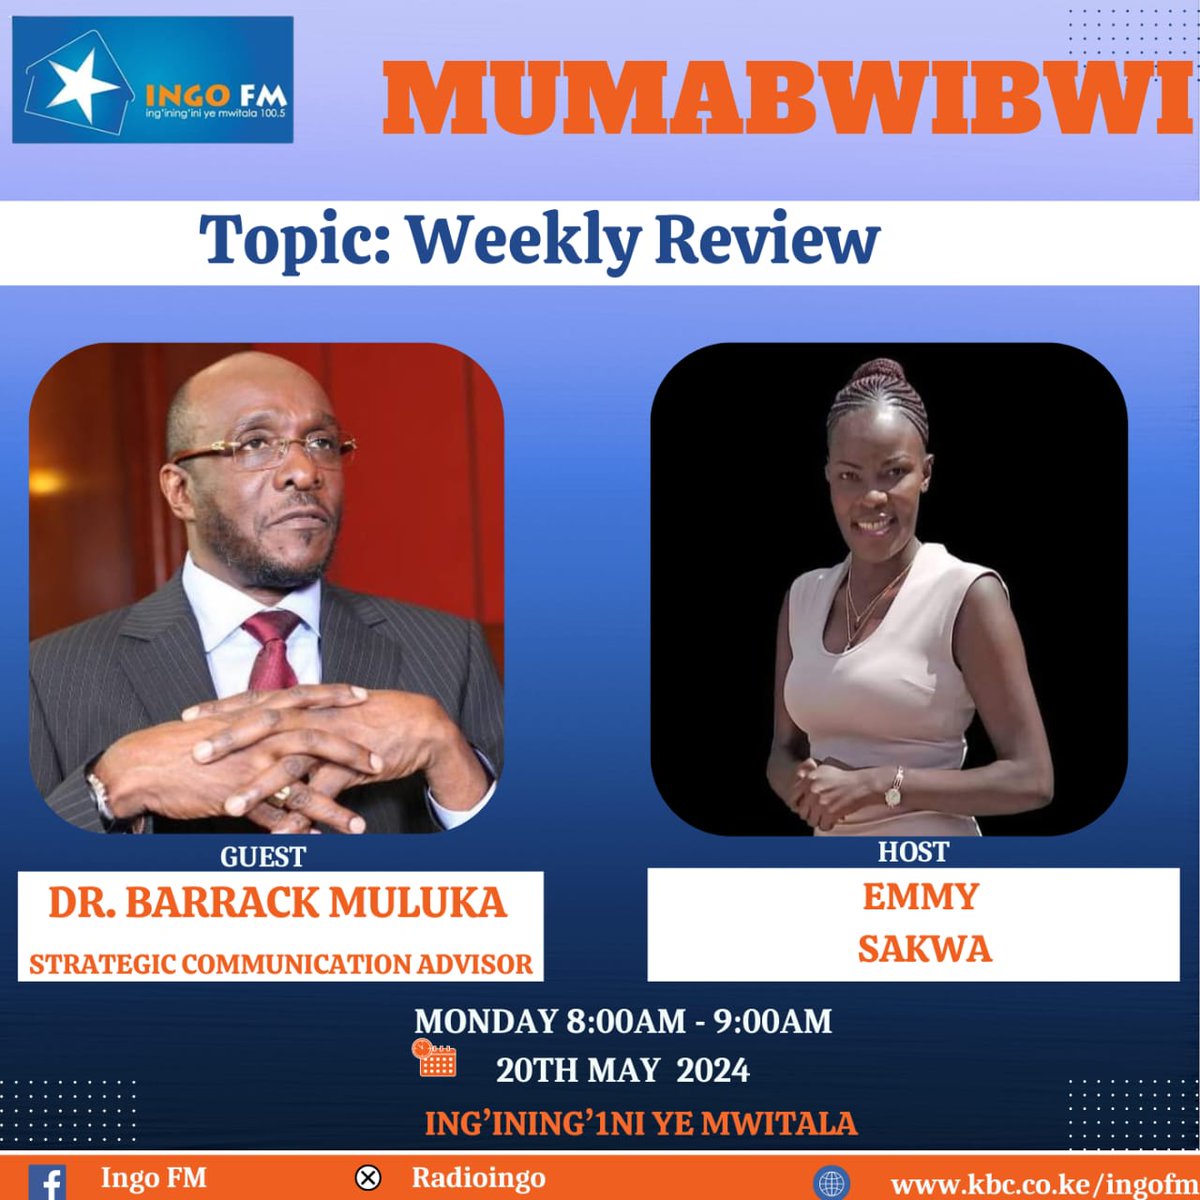 Mumabwibwi | Time: 8:00AM Topic: Weekly Review | Guest: DR. Barrack Muluka | Host: Emmy Sakwa. Kama kawaida usikose kusikiliza mazungumzo ya yaliyojiri. Hii ni moto kama pasi. Changamka na swali, maelezo ama kuchangia Mada. ^DA #Mumabwibwi #IngoFM